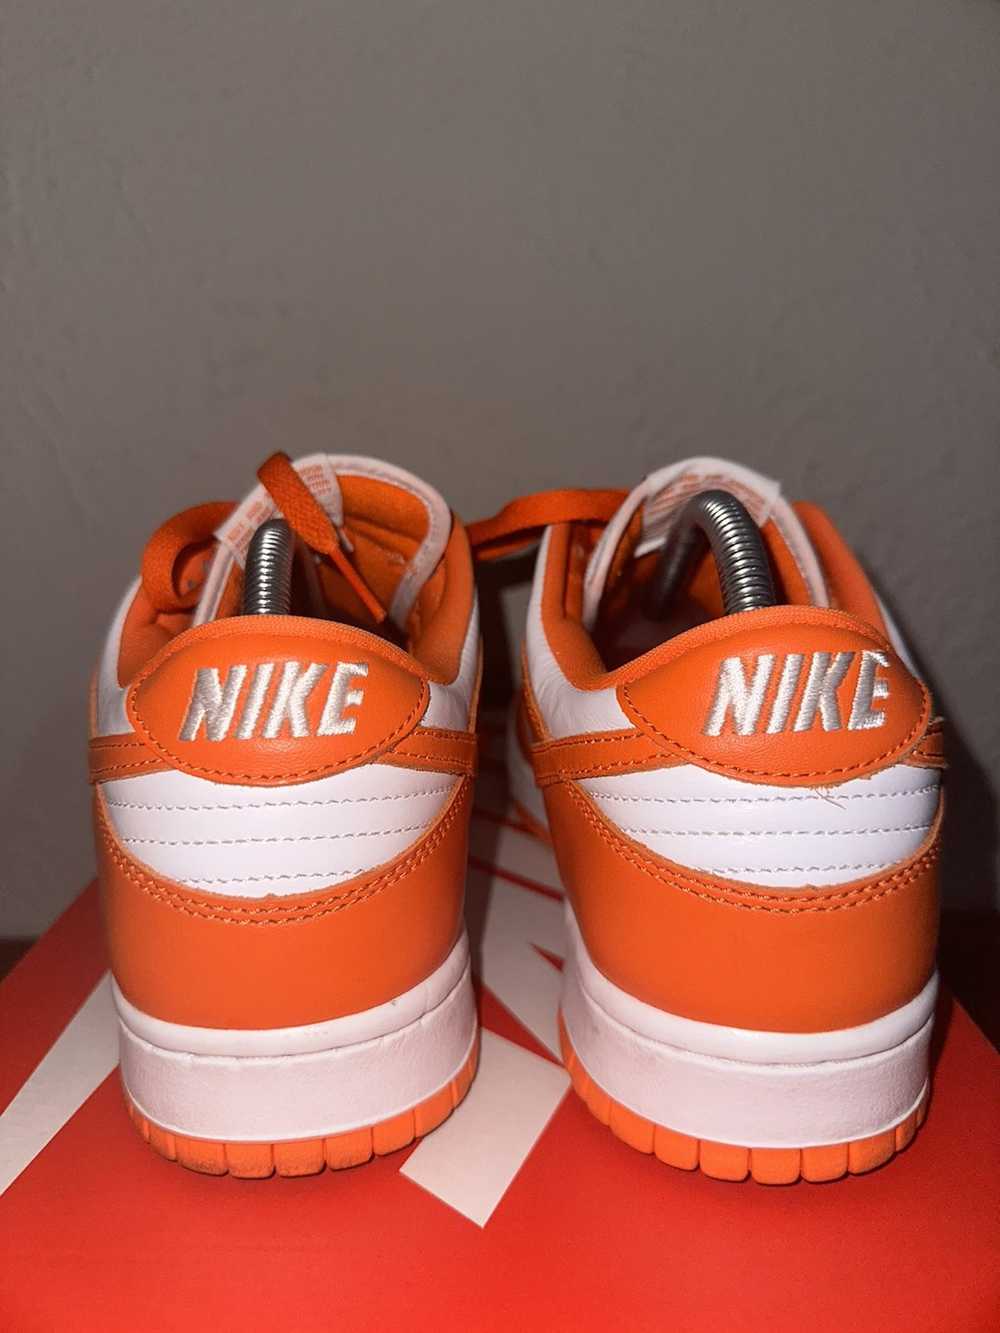 Nike Nike Dunk Low “Syracuse” - image 3